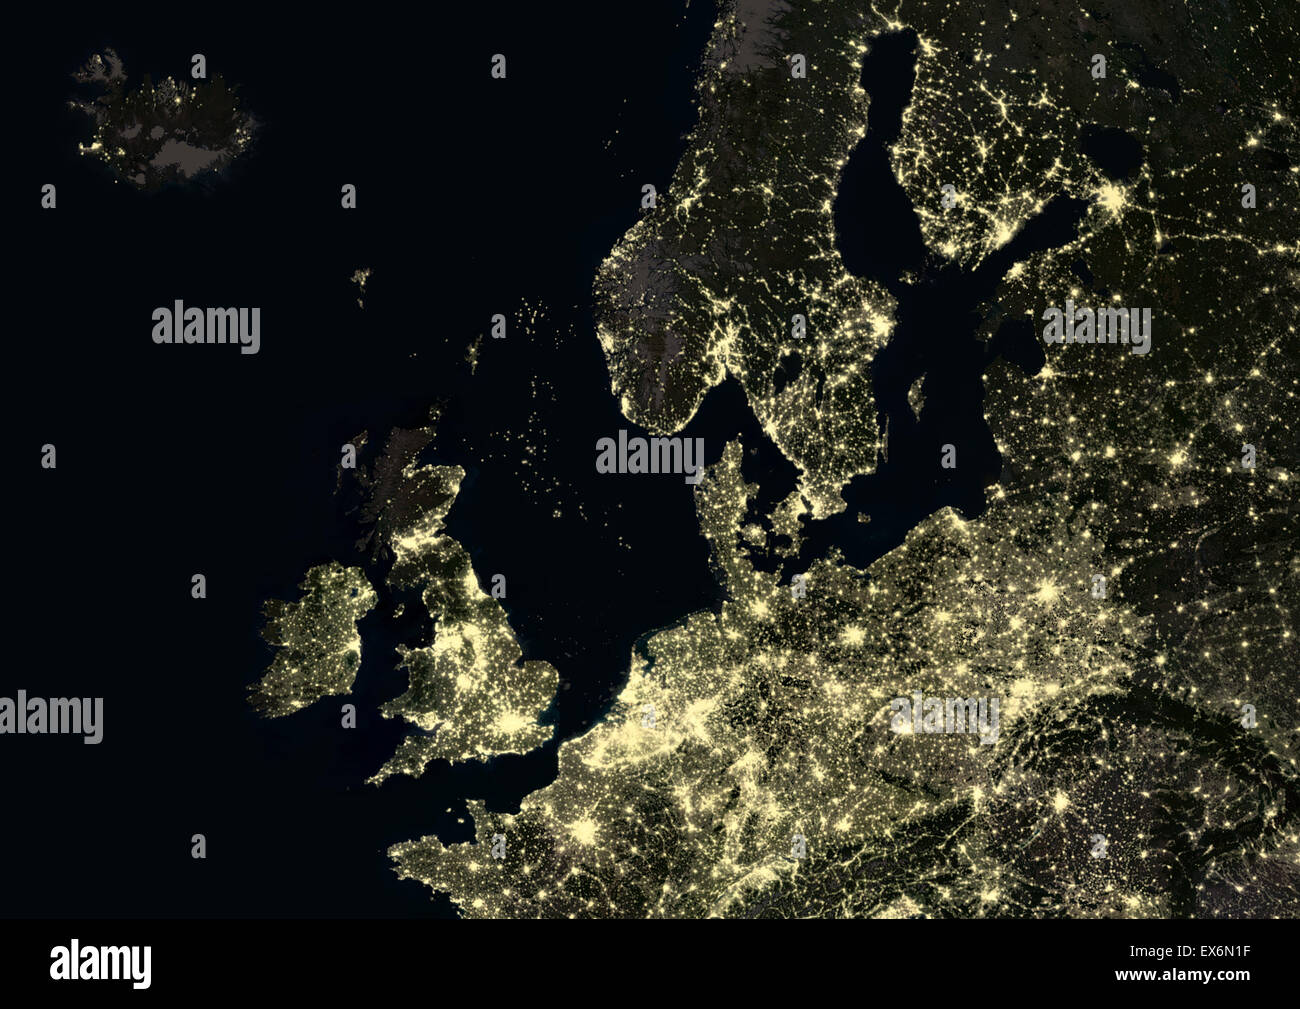 Northern Europe bei Nacht im Jahr 2012. Dieses Satellitenbild zeigt städtische und industrielle Beleuchtung. Stockfoto